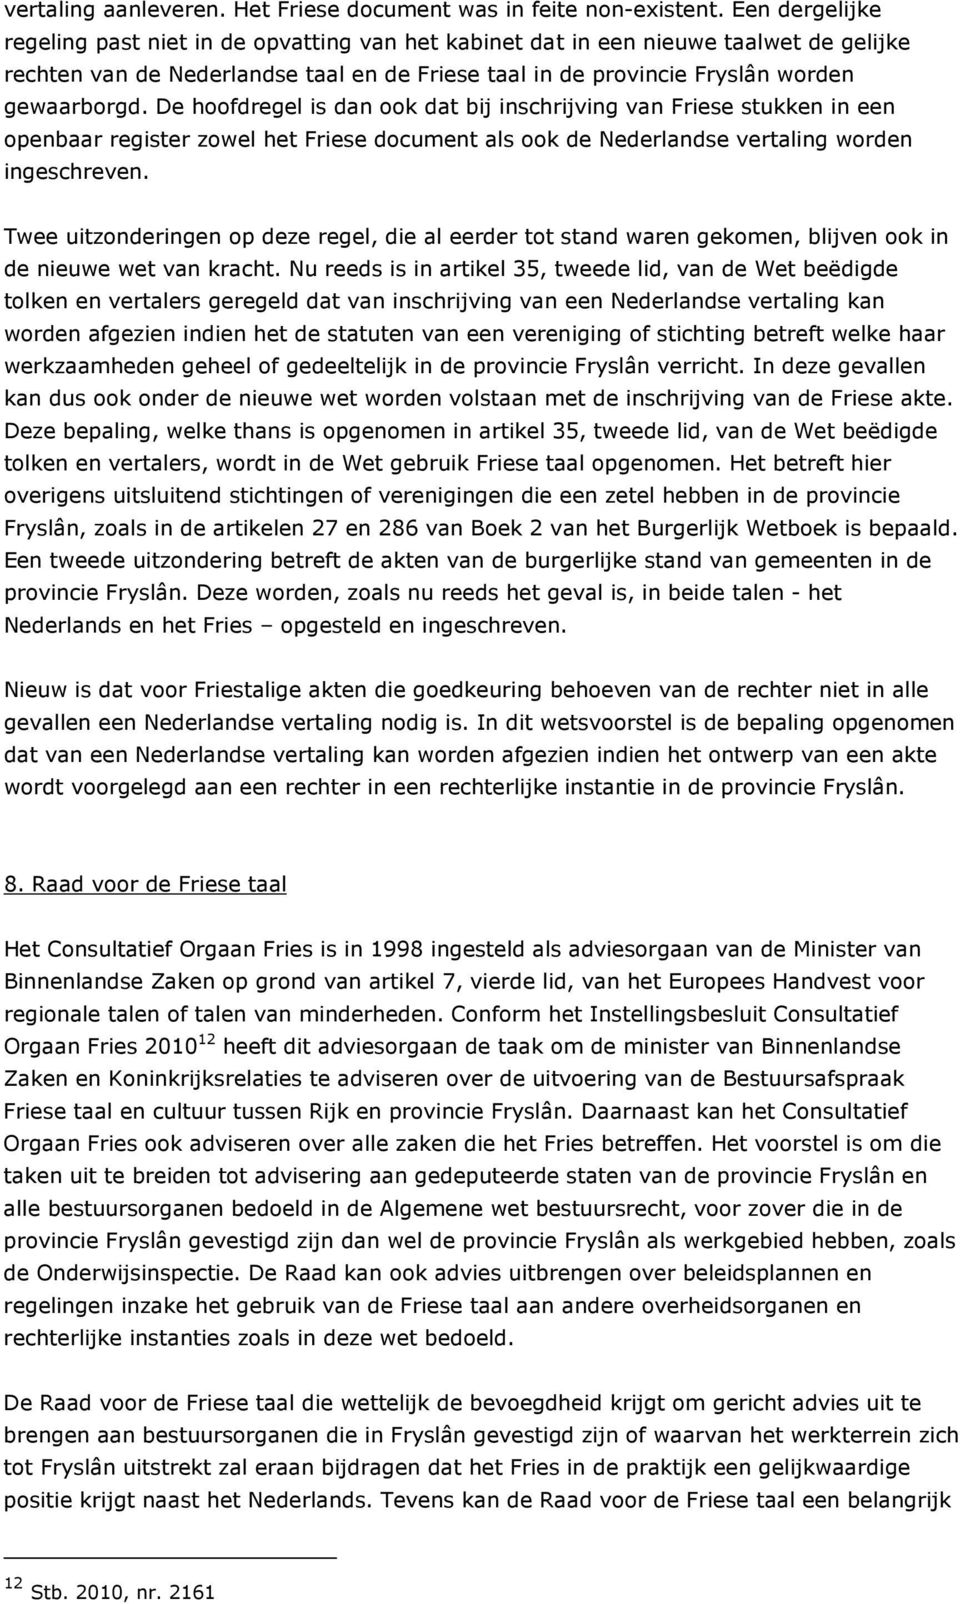 De hoofdregel is dan ook dat bij inschrijving van Friese stukken in een openbaar register zowel het Friese document als ook de Nederlandse vertaling worden ingeschreven.